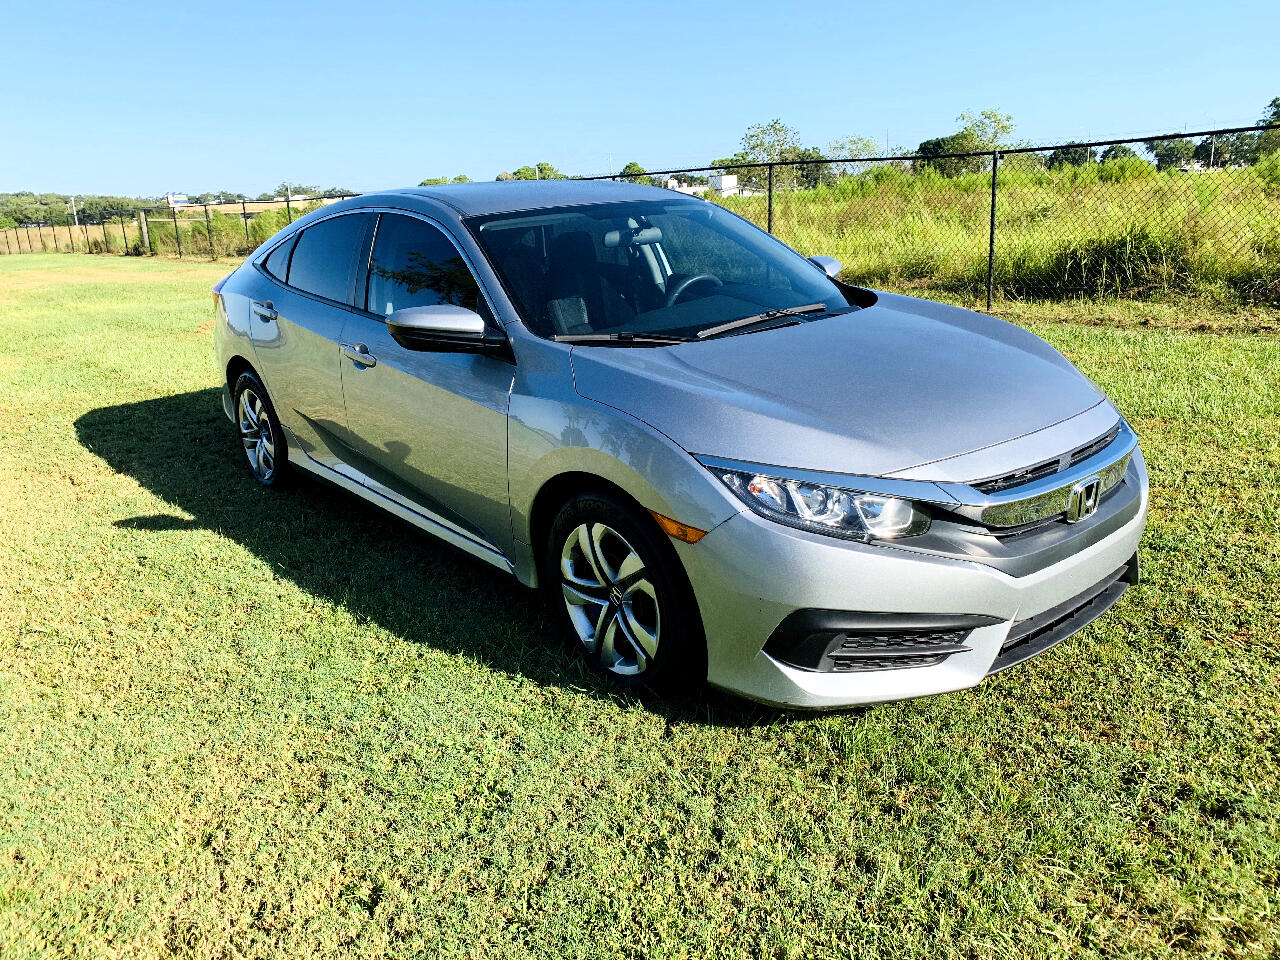 Used 2017 Honda Civic Sedan Lx Cvt For Sale In Lakeland Fl